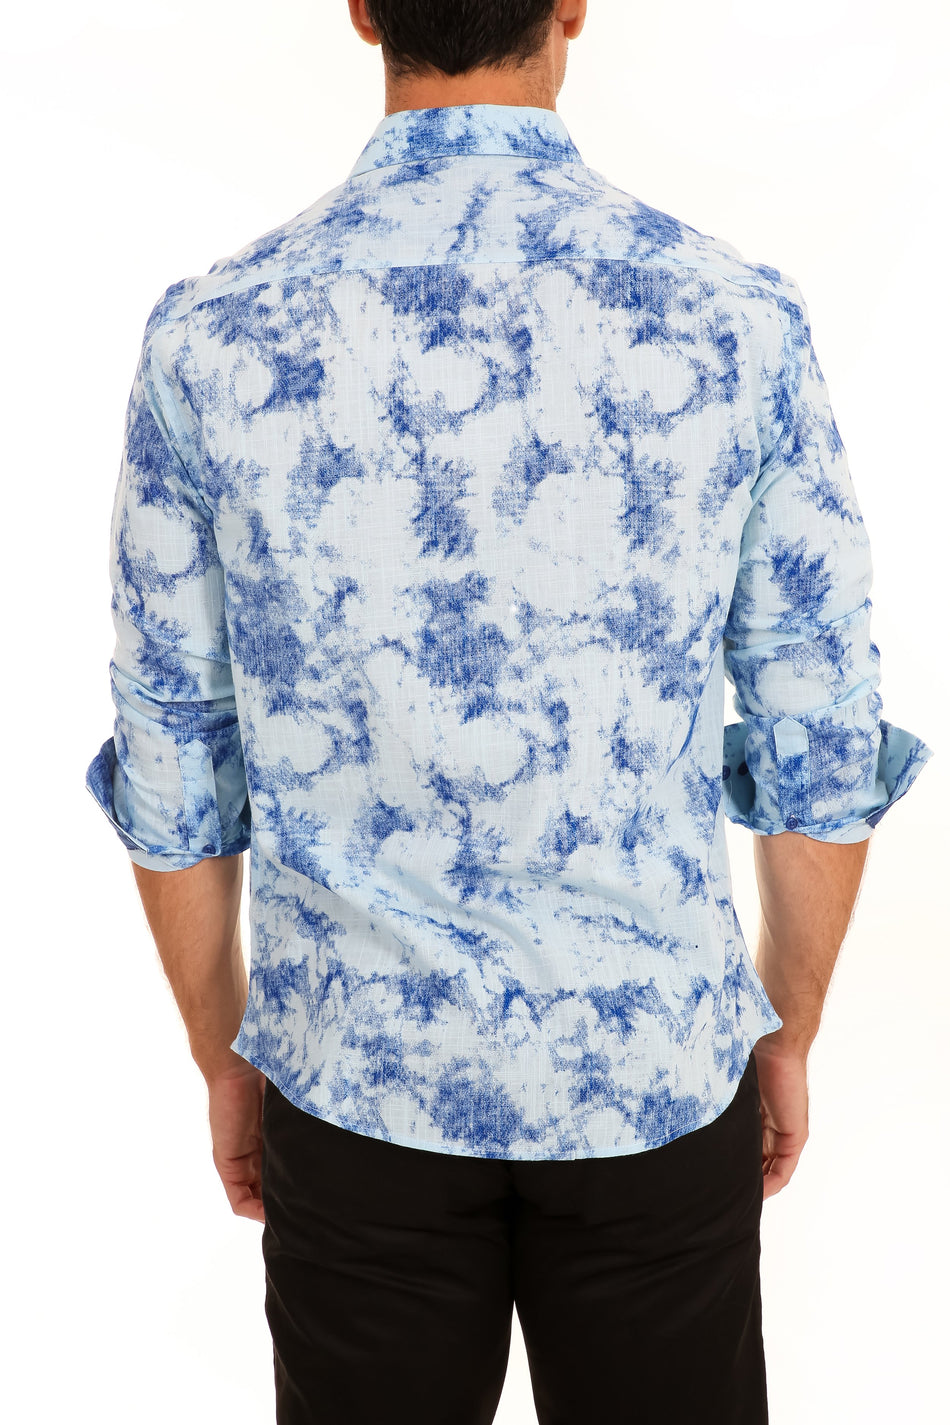 Splashed Linen Texture Print Long Sleeve Dress Shirt Blue